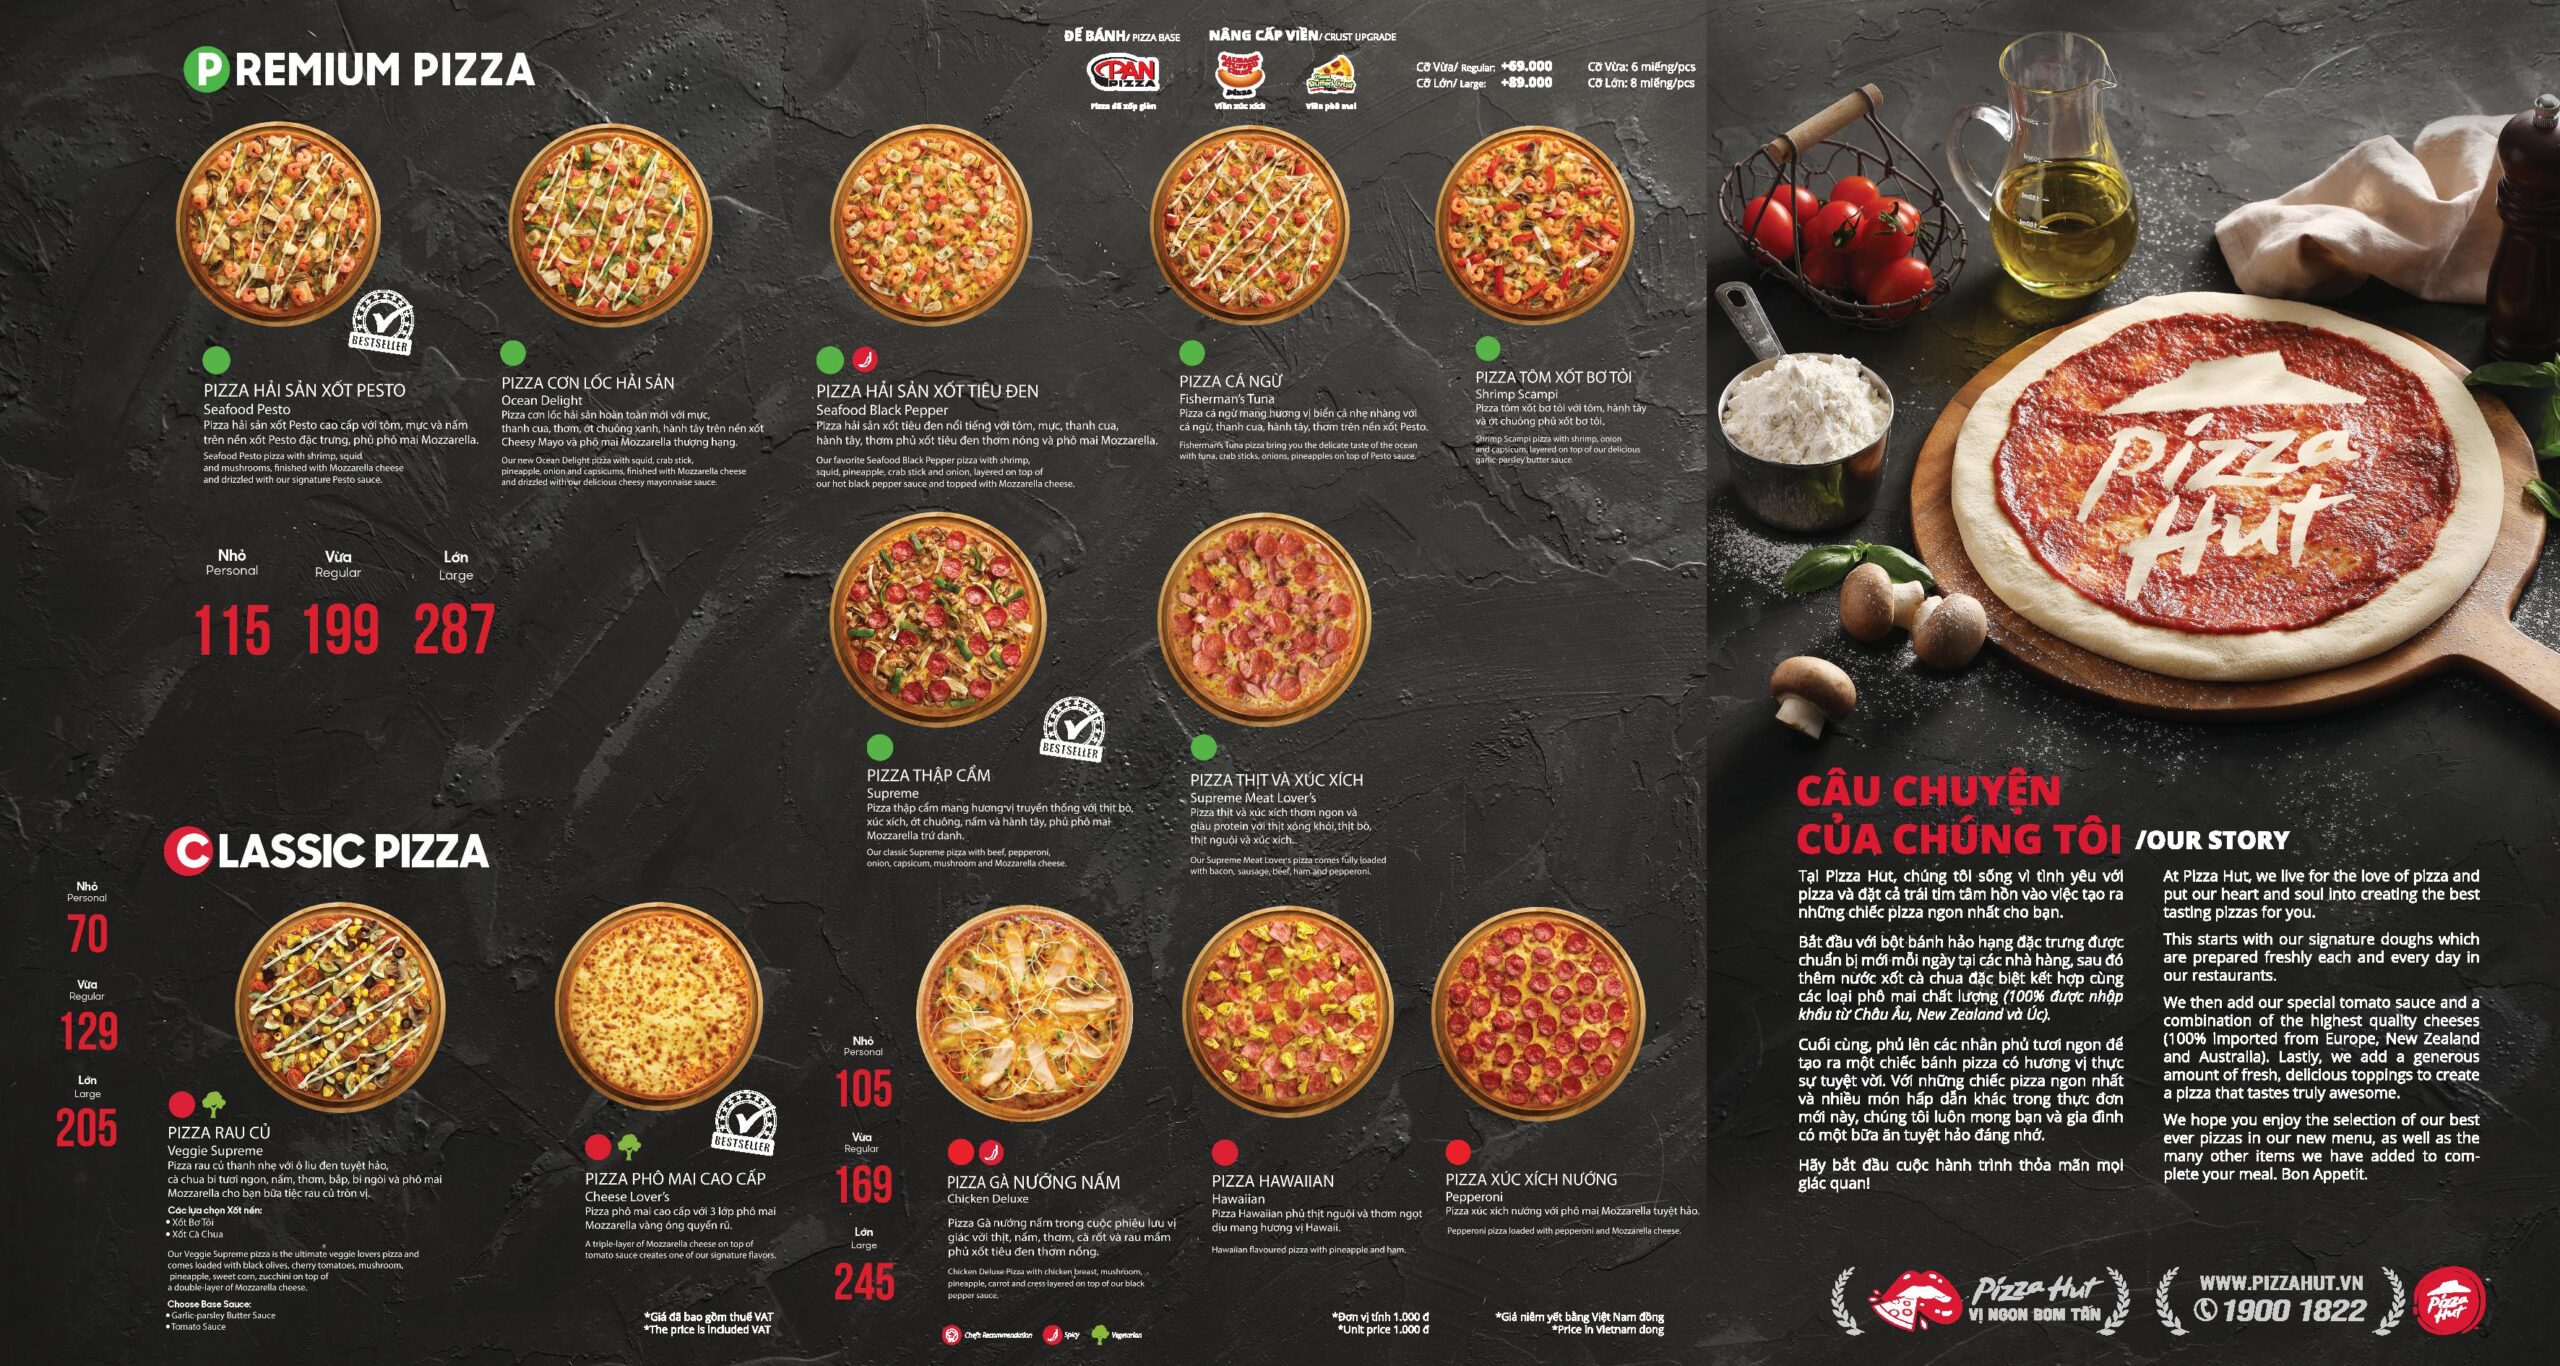 chiến lược marketing của pizza hut: chiến lược về giá